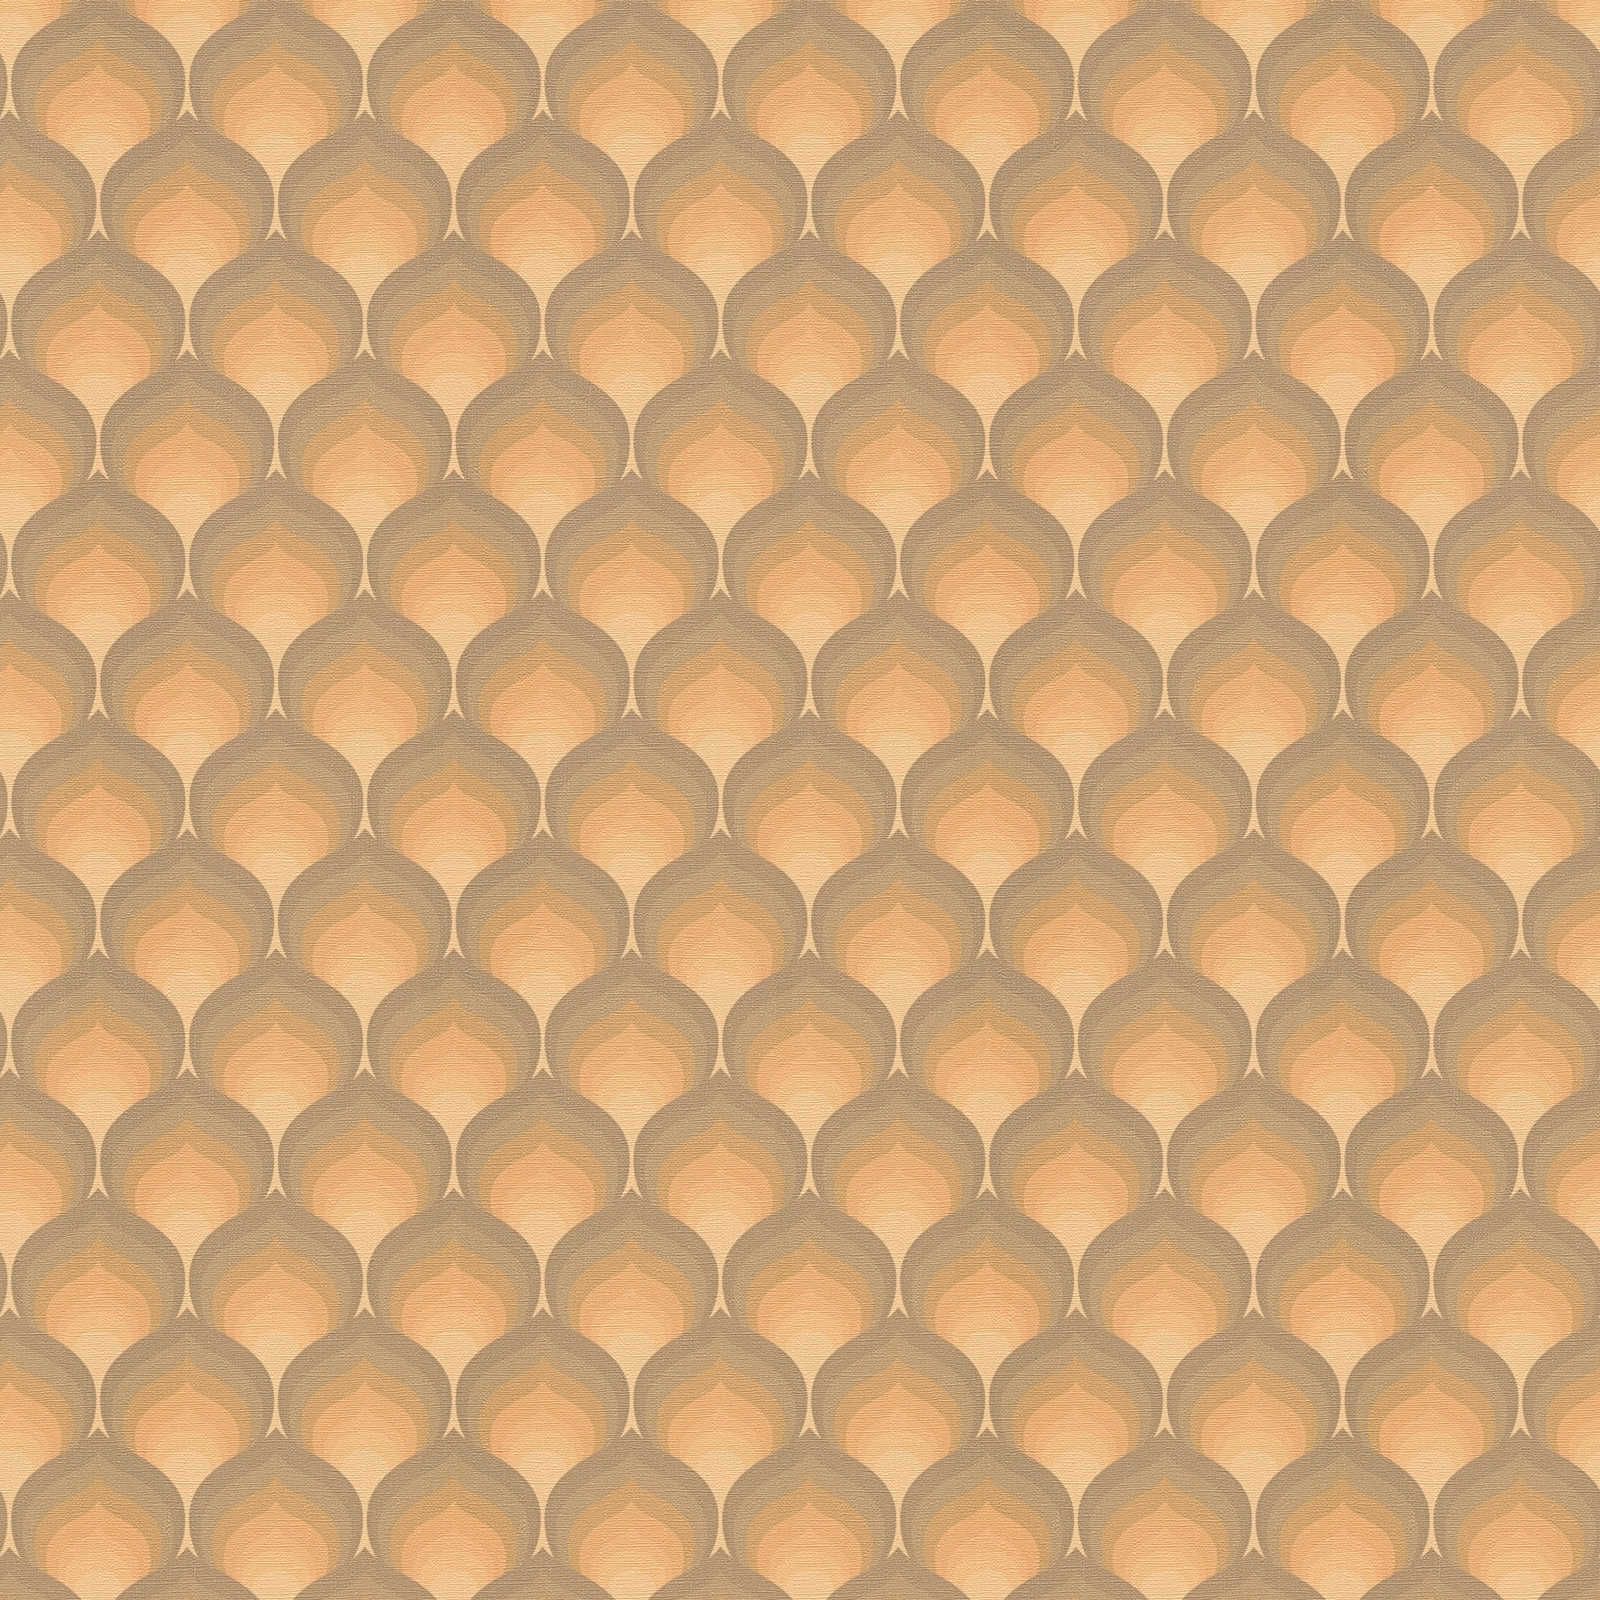 Retro Tapete mit strukturierten Schuppenmuster – Braun, Gelb, Orange
